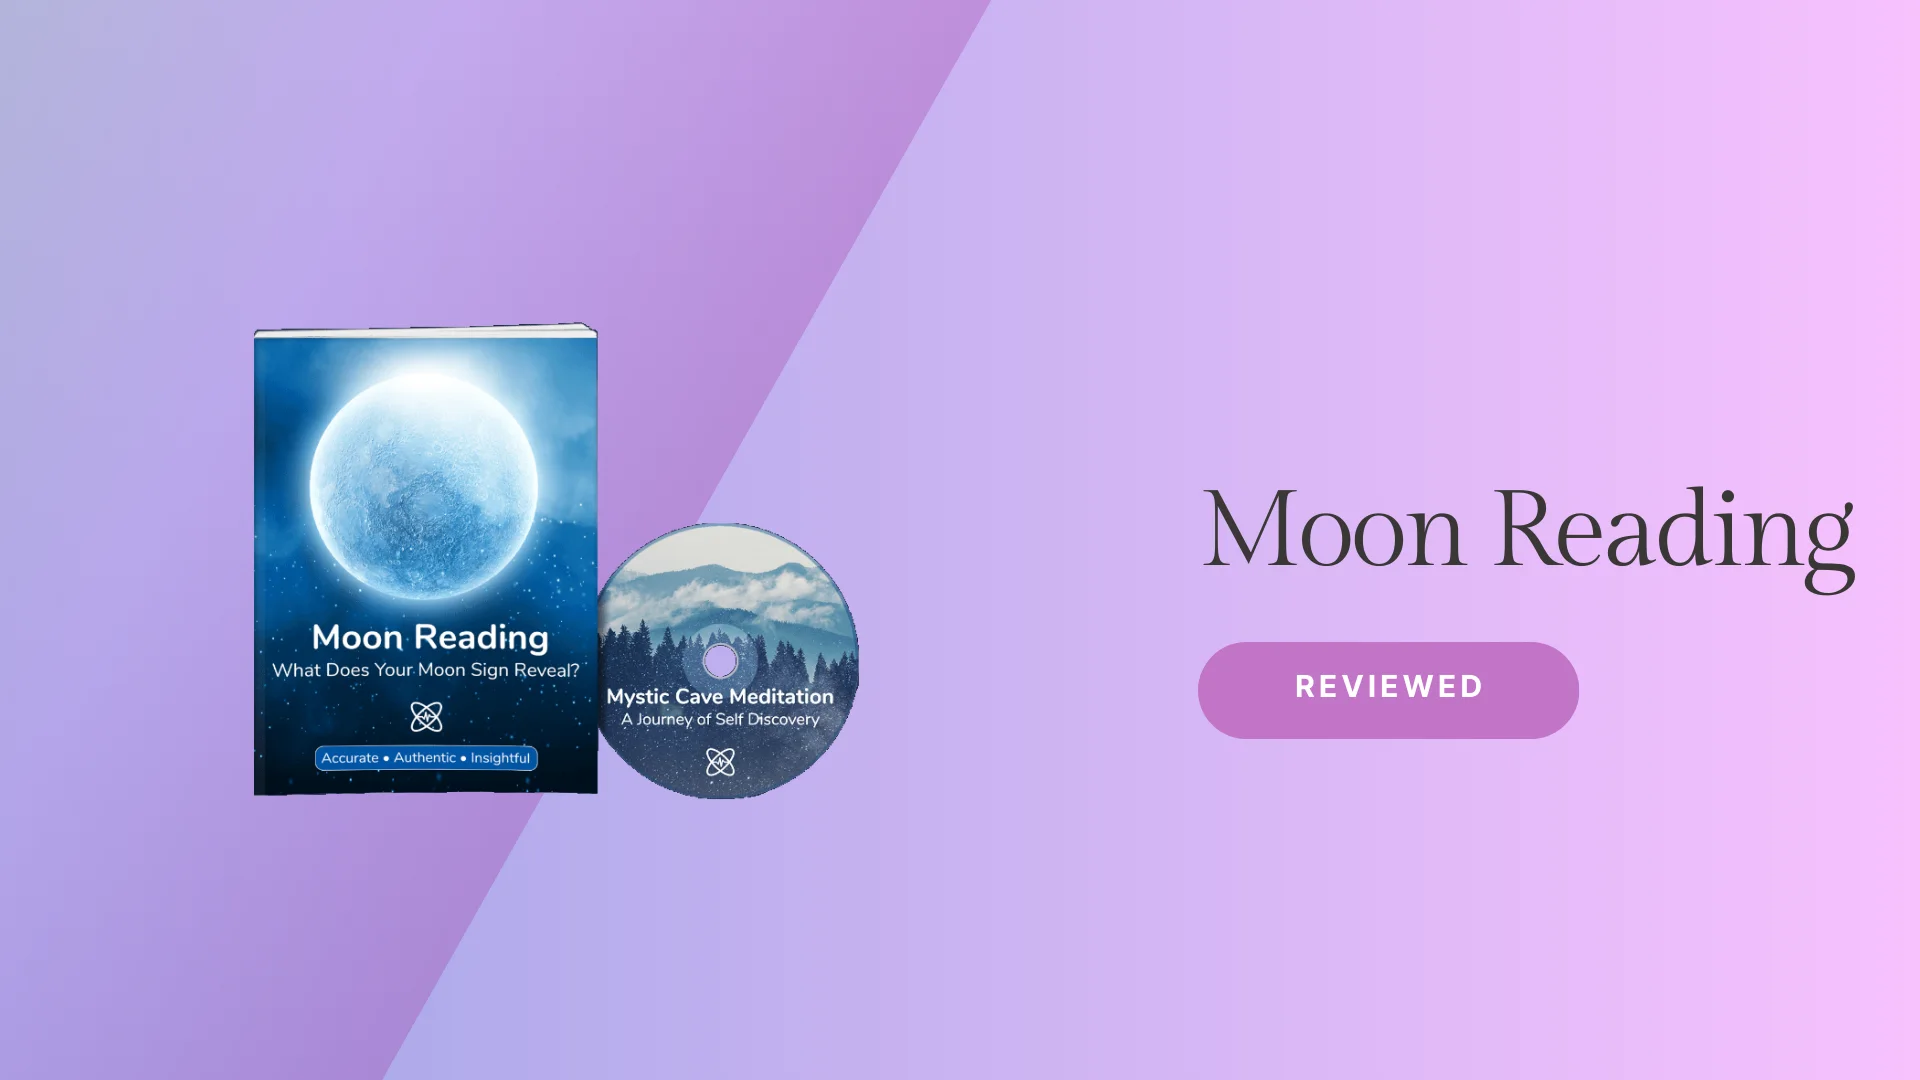 Moon reading reviews